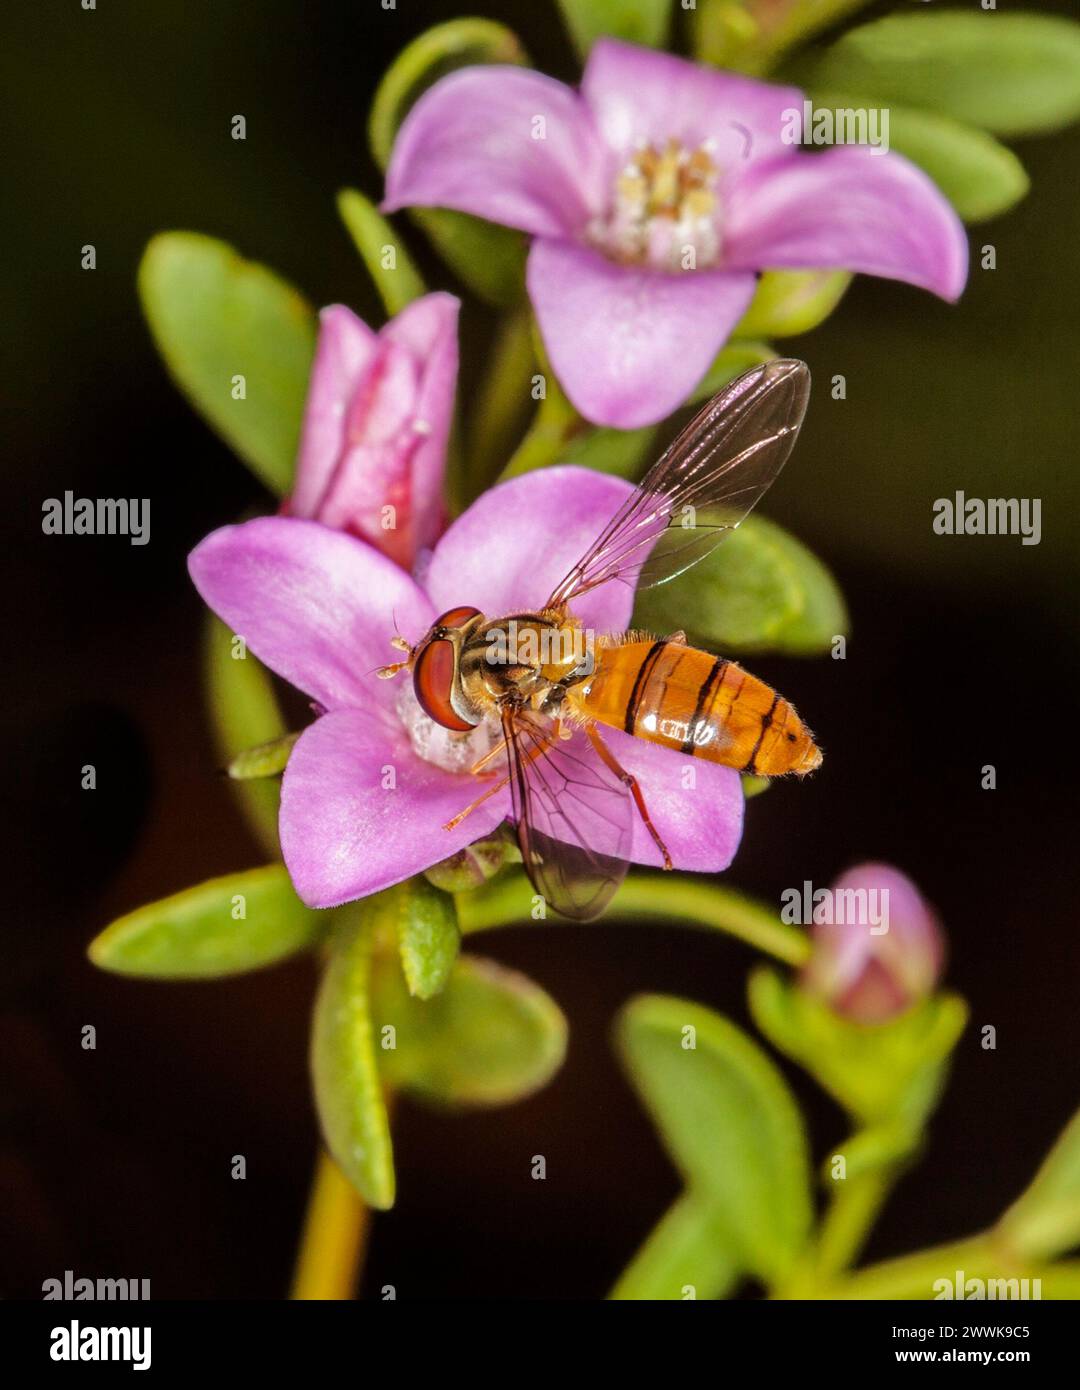 Superbe image de Hoverfly, un insecte bénéfique, sur des fleurs roses de l'arbuste australien Boronia crenulata 'Pink passion' sur fond sombre Banque D'Images